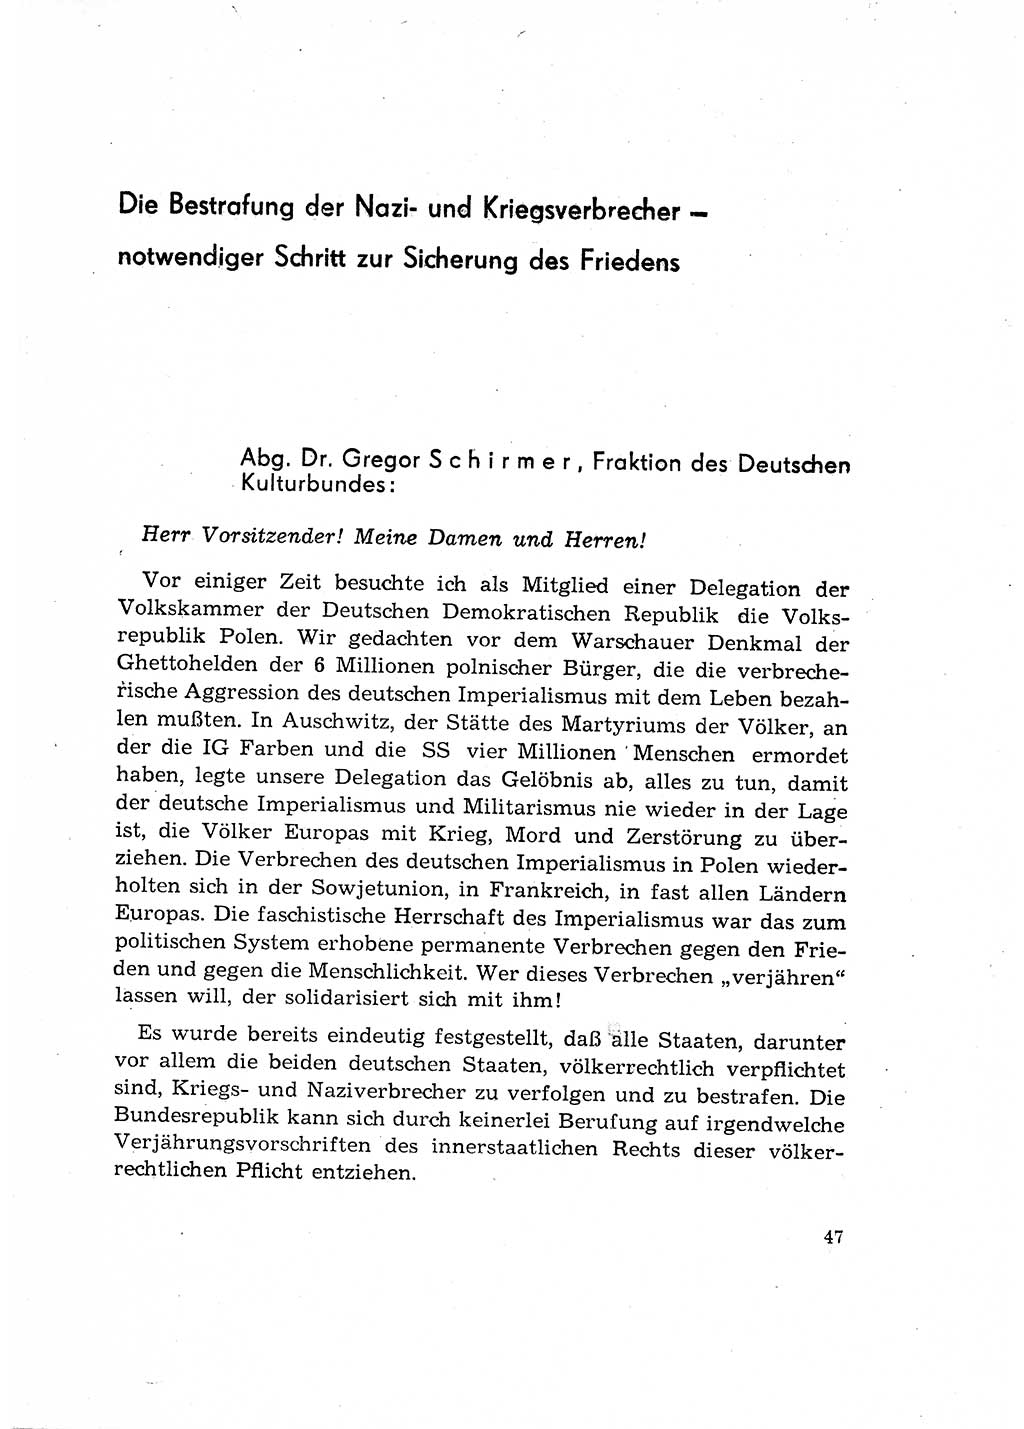 Bestrafung der Nazi- und Kriegsverbrecher [Deutsche Demokratische Republik (DDR)] 1964, Seite 47 (Bestr. Nazi-Kr.-Verbr. DDR 1964, S. 47)